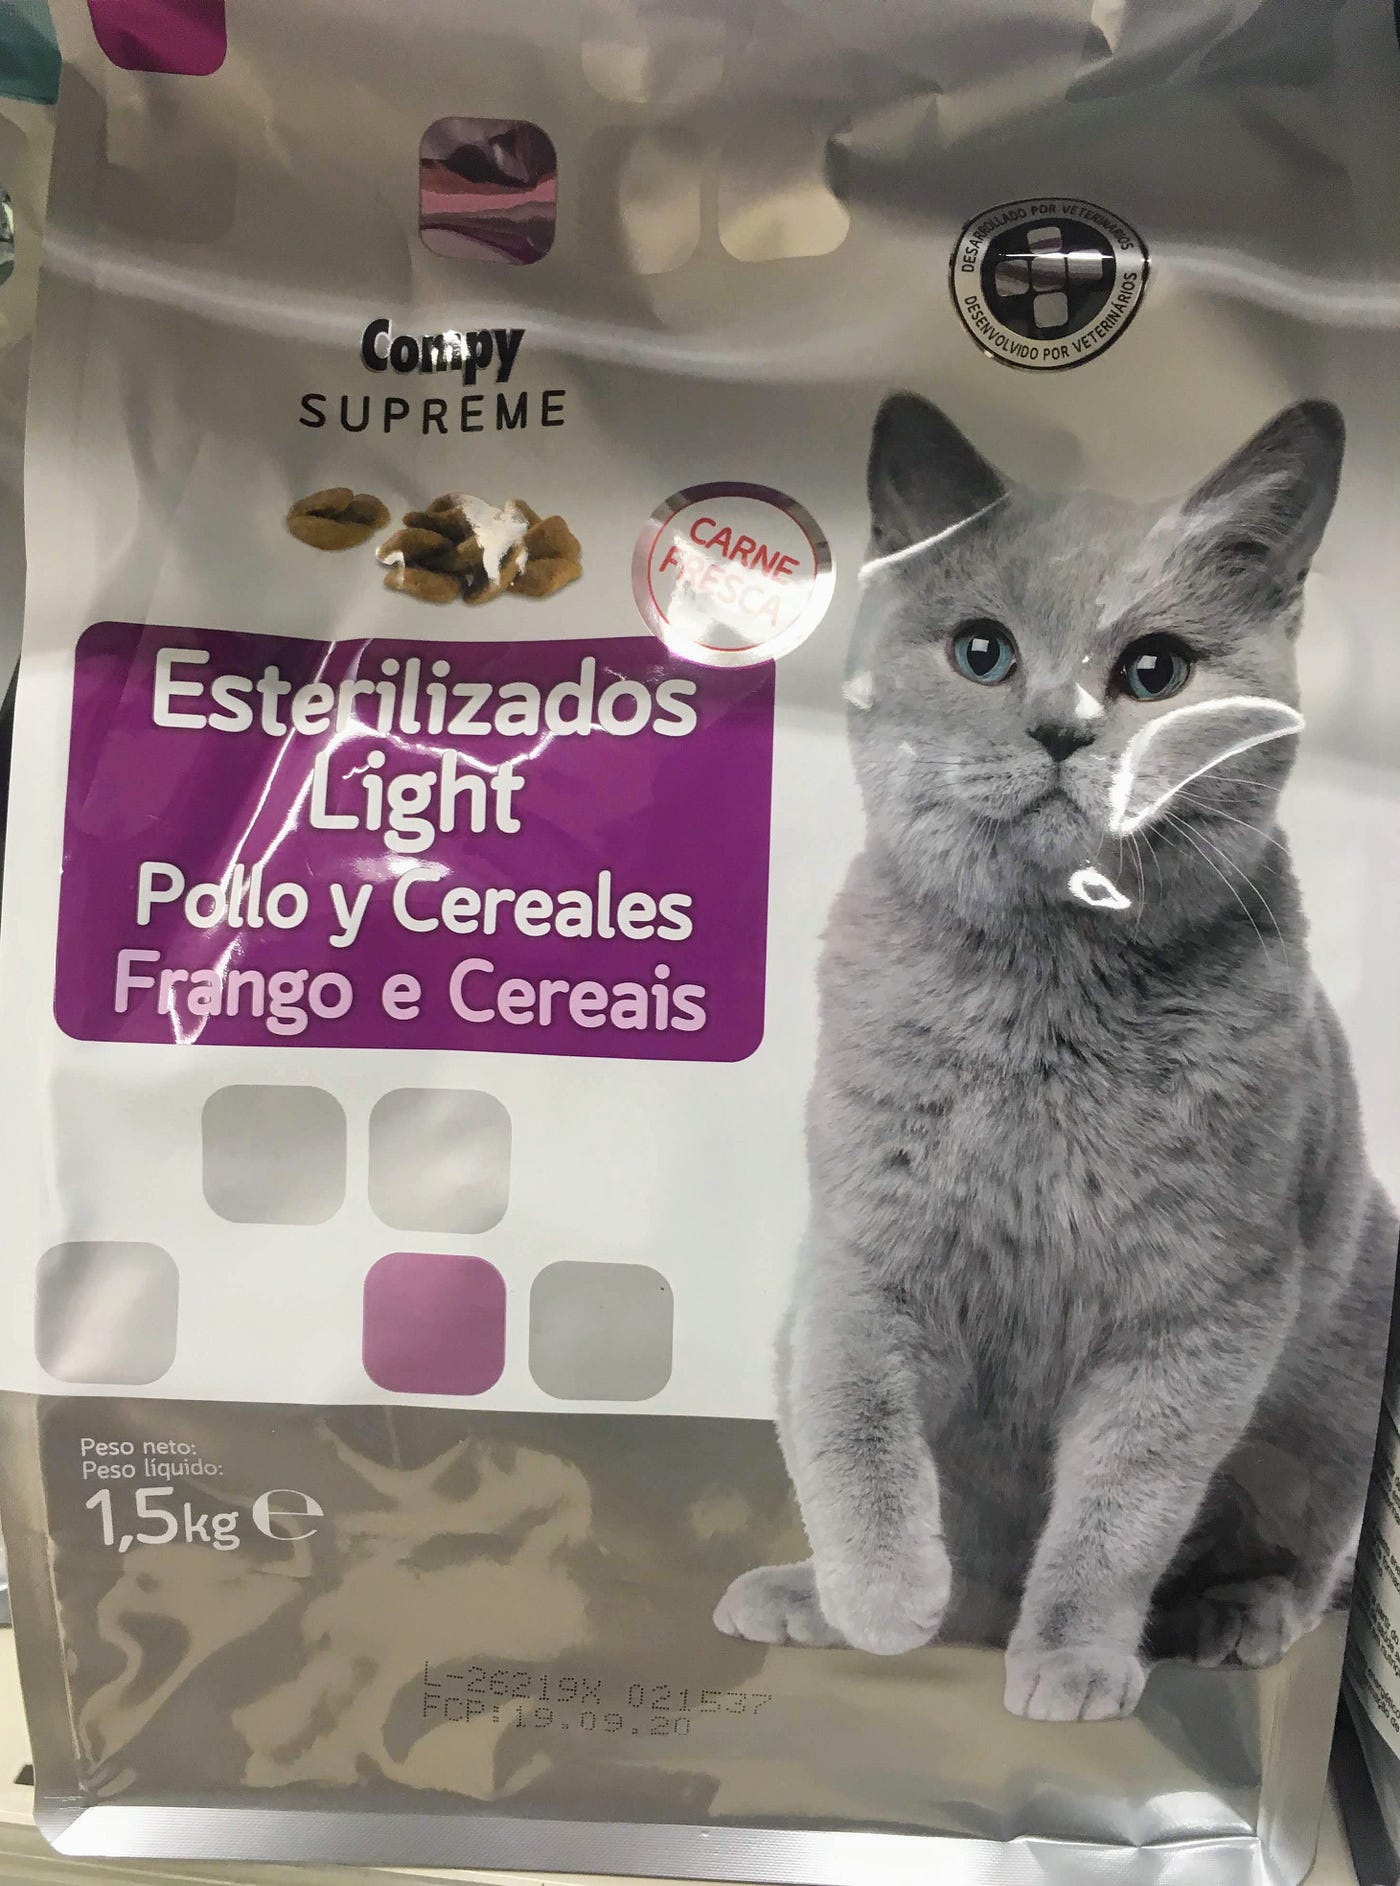 Piensos de marca blanca: Cómo elegir un pienso de calidad para gatos y  perros (3) | by Verónica Valls | gorogoro: purr & roll! | Medium